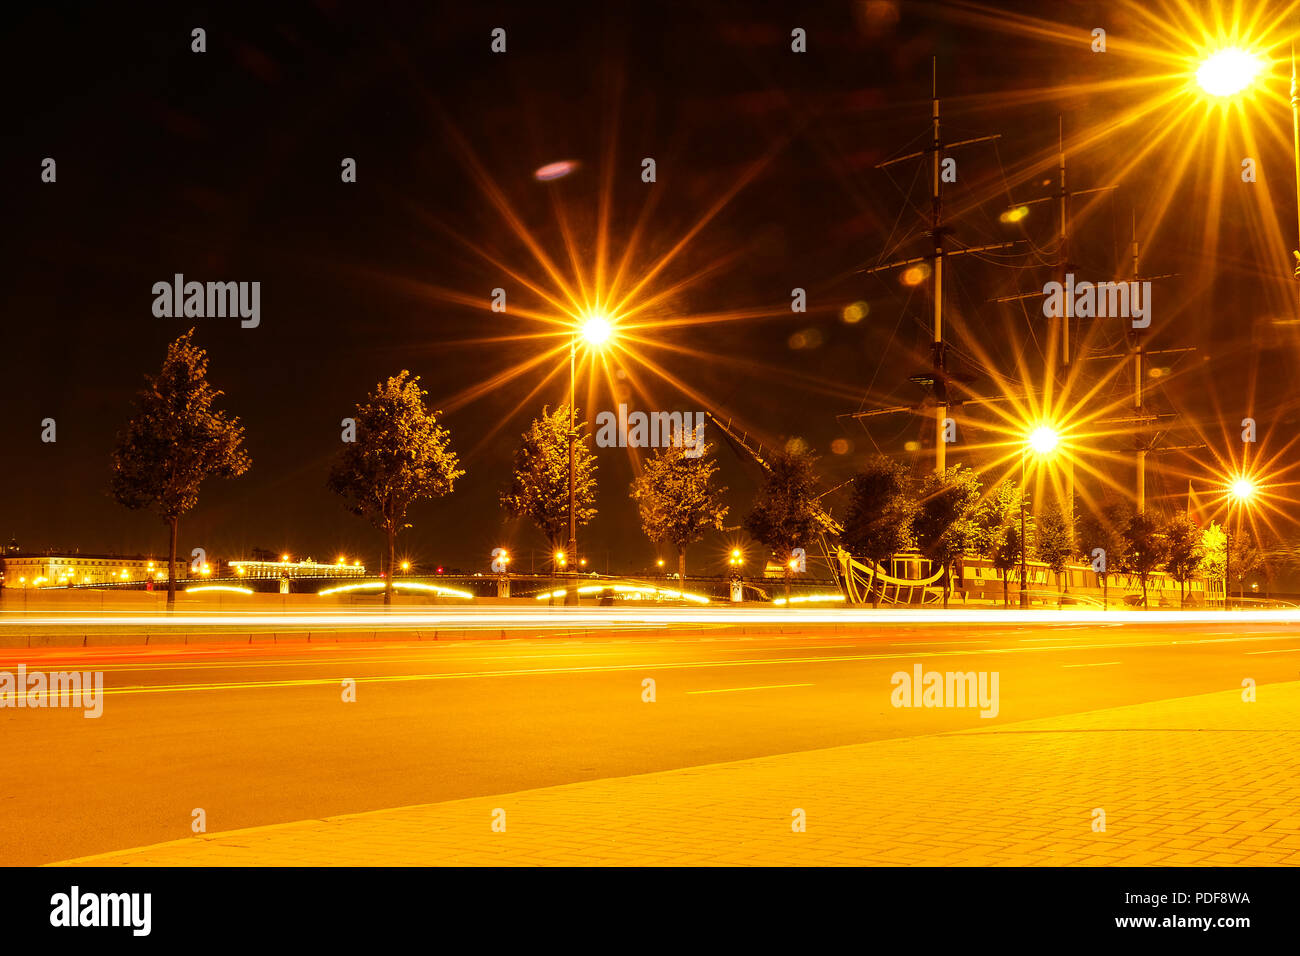 Nacht Stadt Straßenlaternen, Bokeh, Hintergrund, Dunkelheit. Nacht Lichter  der Stadt Strahlen die Lichter aus. Licht Loop aus der Scheinwerfer  Stockfotografie - Alamy